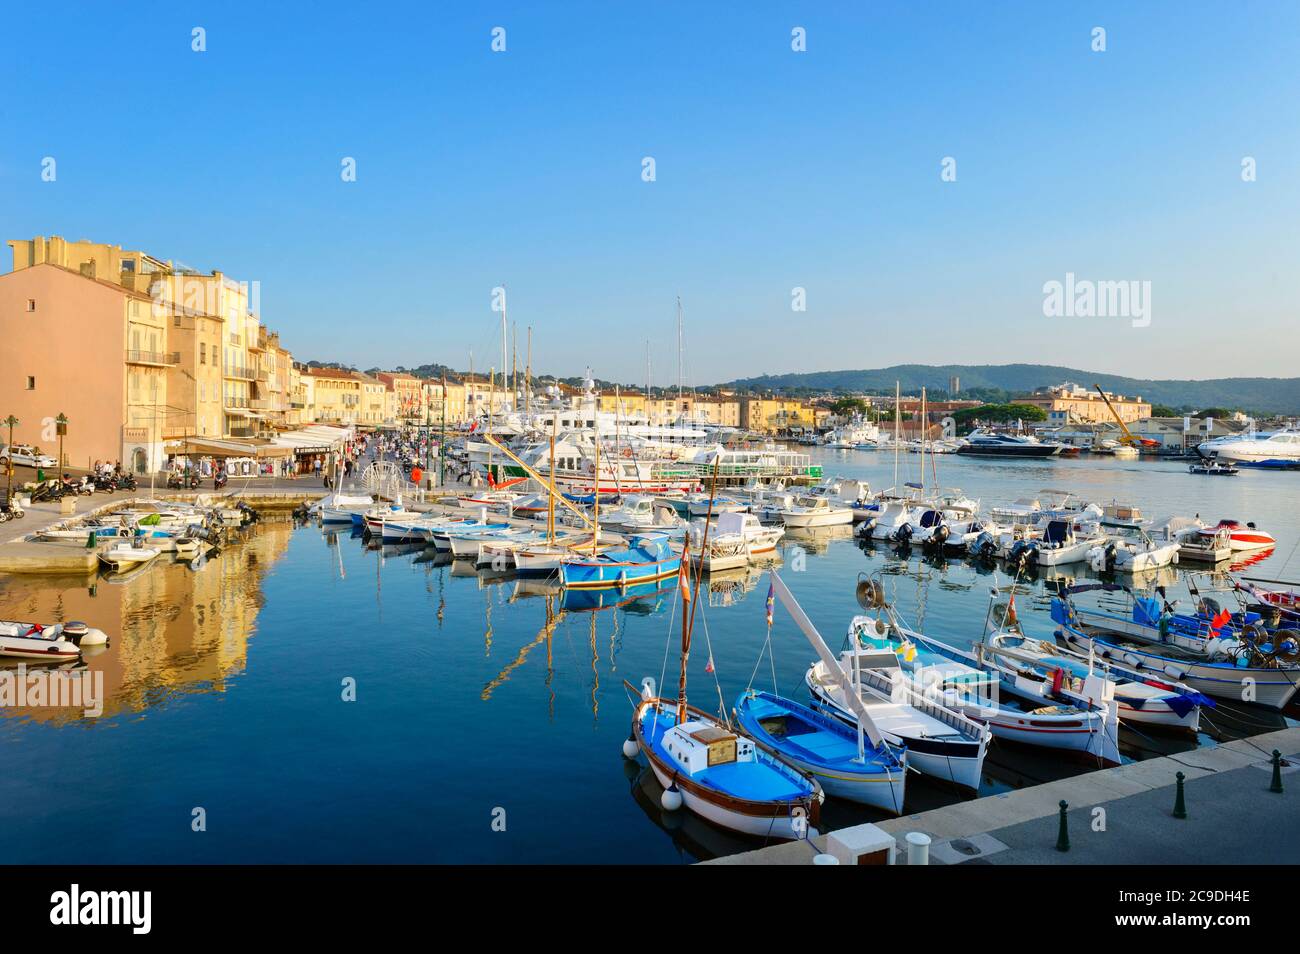 Saint Tropez - Frankreich - Europa, 25. Mai 2015: Blick auf den kleinen Hafen von Saint-Tropez in der Region Provence-Alpes-Côte d’Azur. Stockfoto